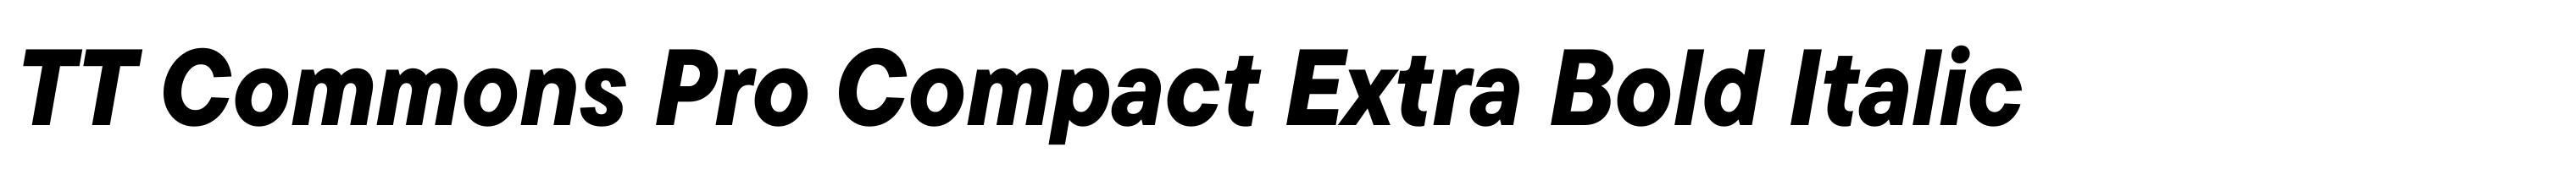 TT Commons Pro Compact Extra Bold Italic